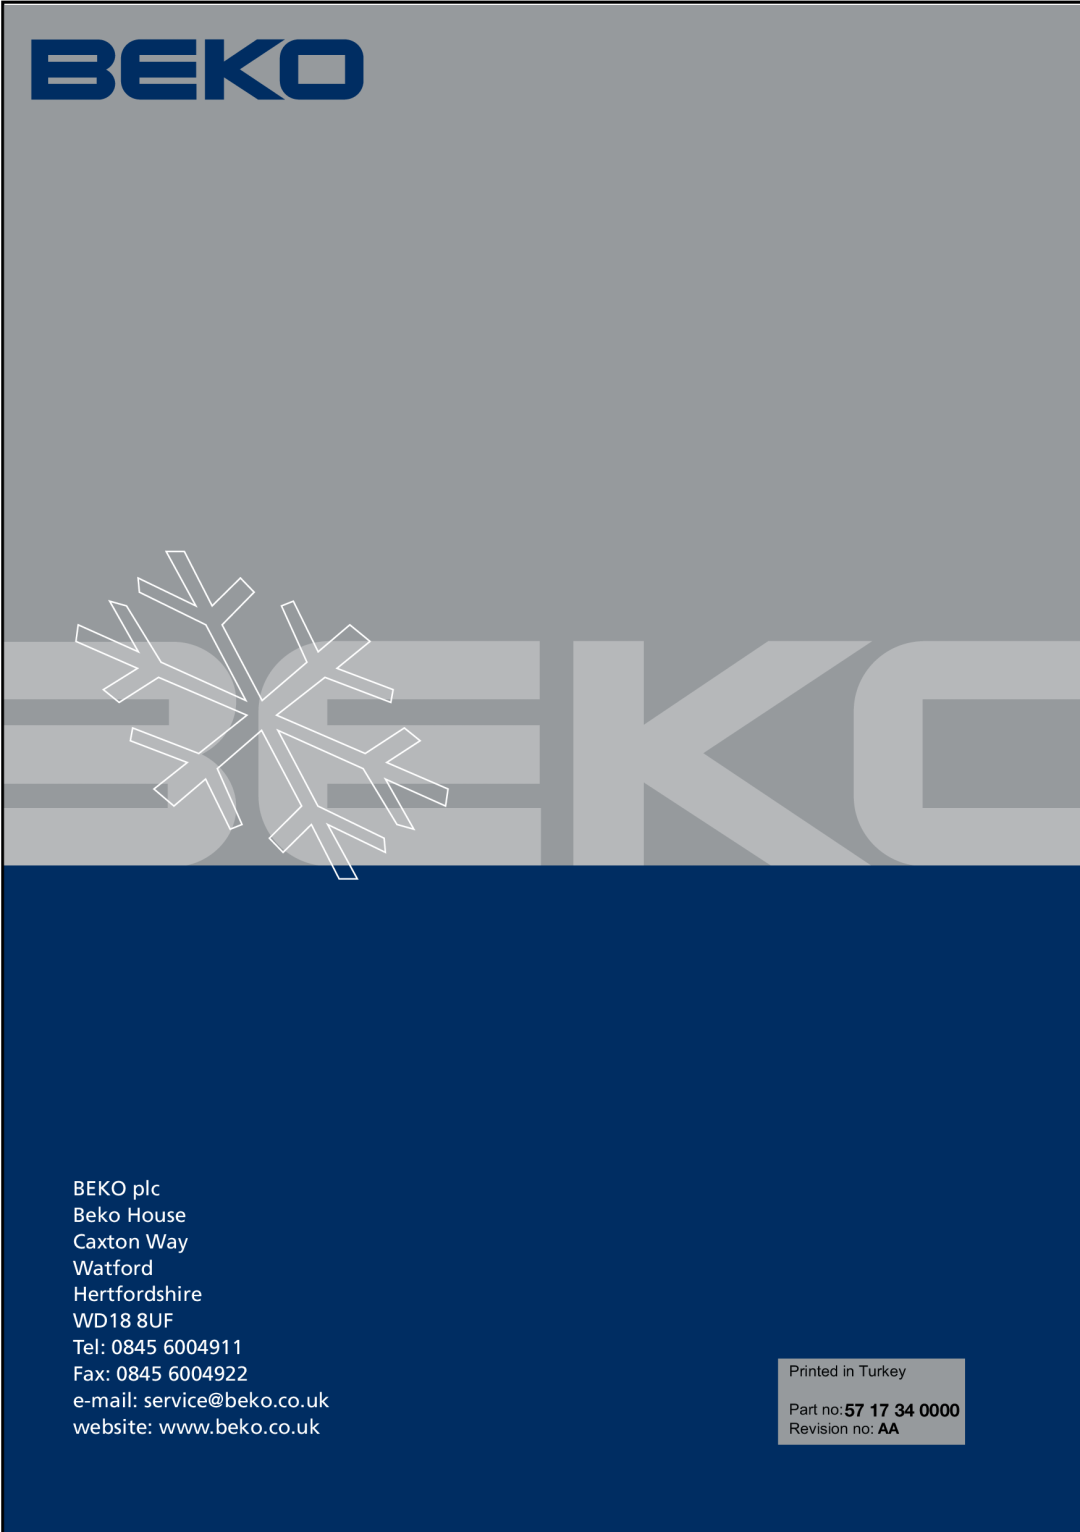 Beko CXF6114 S BEKO plc Beko House Caxton Way Watford Hertfordshire WD18 8UF, Tel 0845 Fax 0845 e-mail service@beko.co.uk 